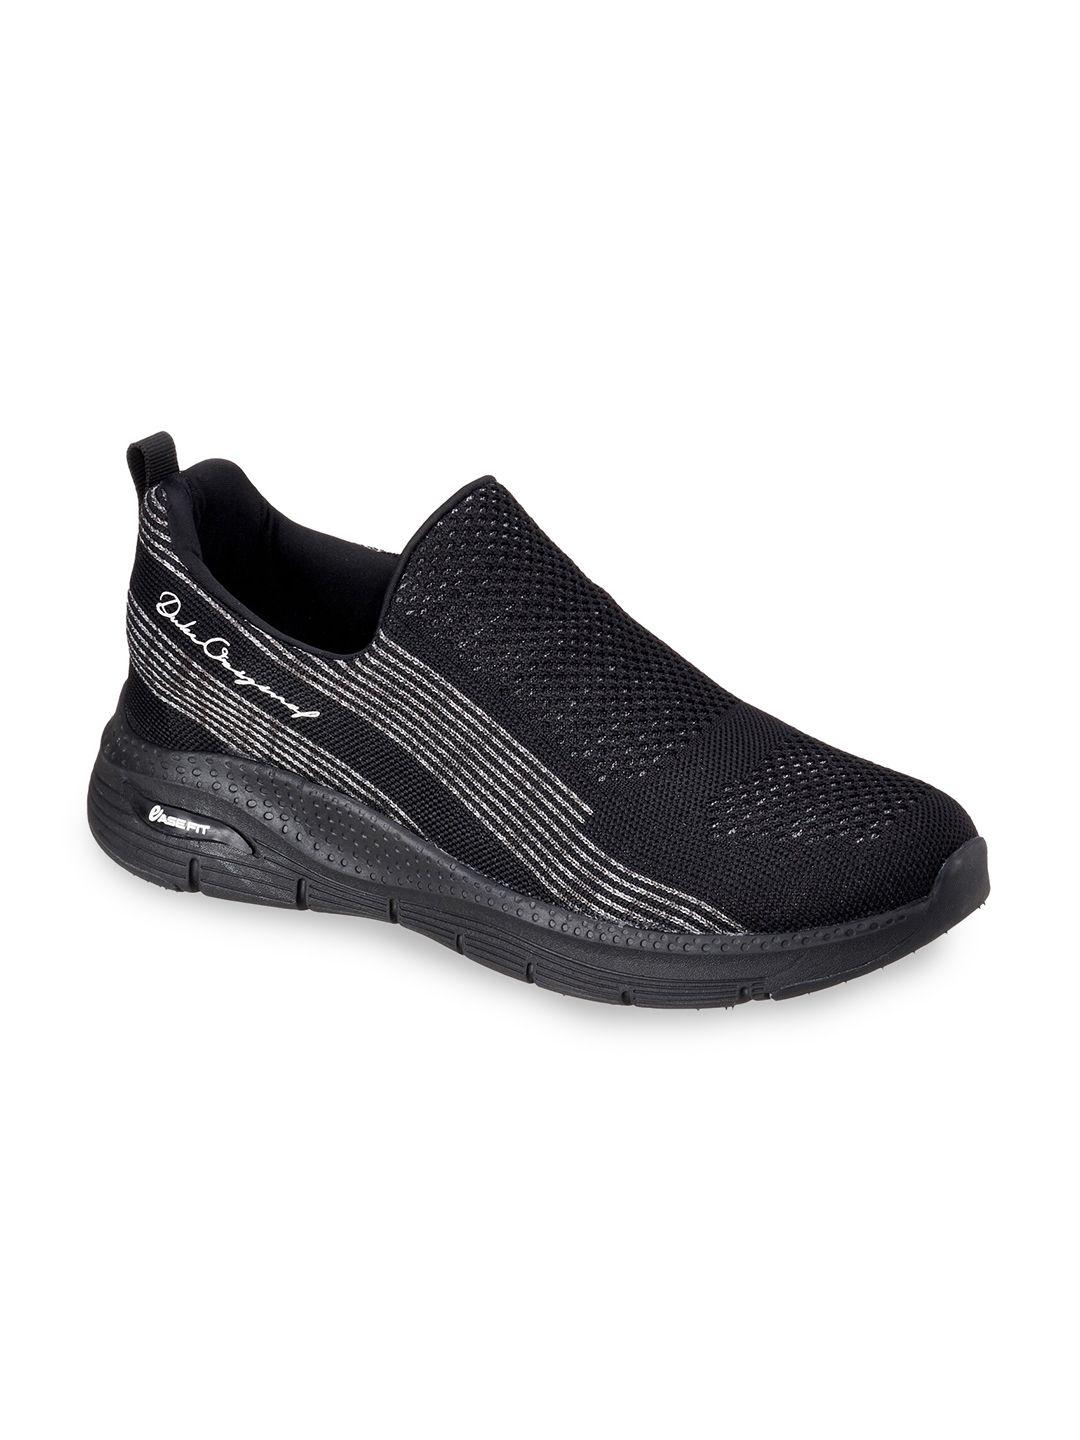 duke-men-black-textile-running-shoes